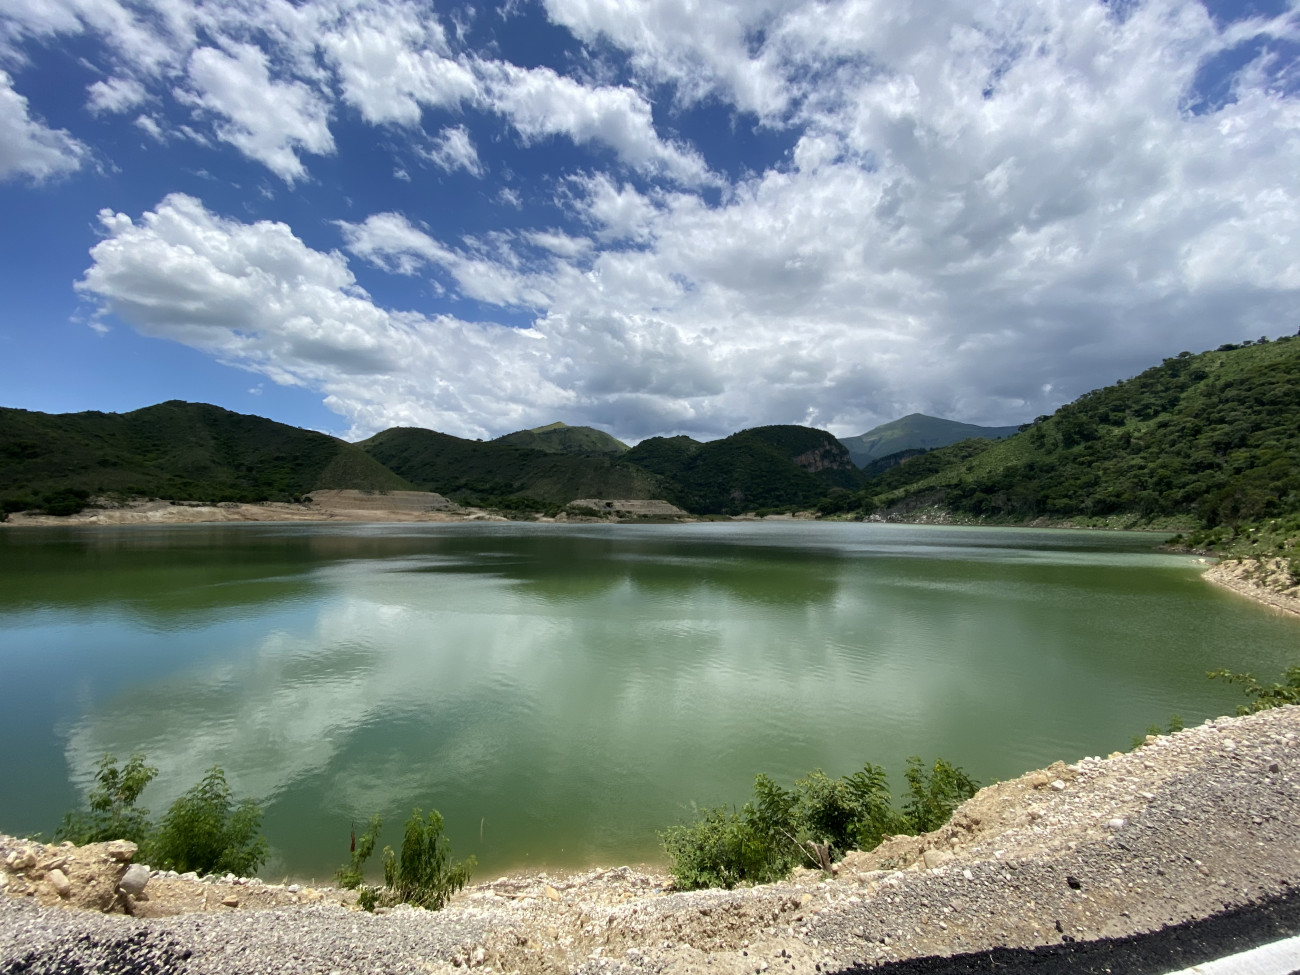  :: Danilo inaugura en Carrera de Yeguas presa Yacahueque,  con capacidad para irrigar 40 mil tareas